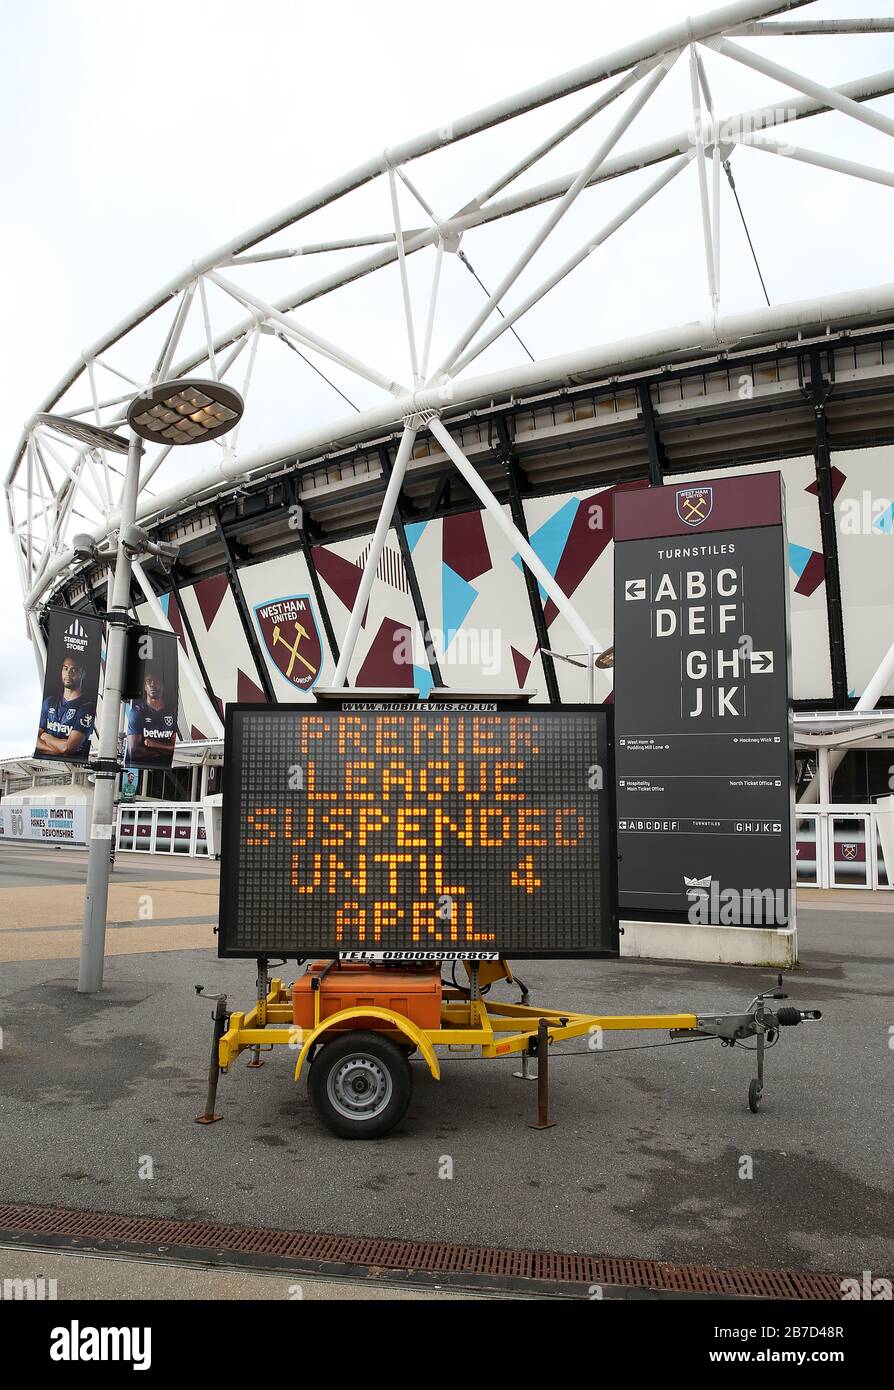 Vue d'un panneau LED informant les fans que le match est en dehors du stade de Londres, où se trouve le club de football West Ham United, suite à l'annonce de vendredi selon laquelle la Premier League a suspendu tous les matches jusqu'au samedi 4 avril 2020. Banque D'Images